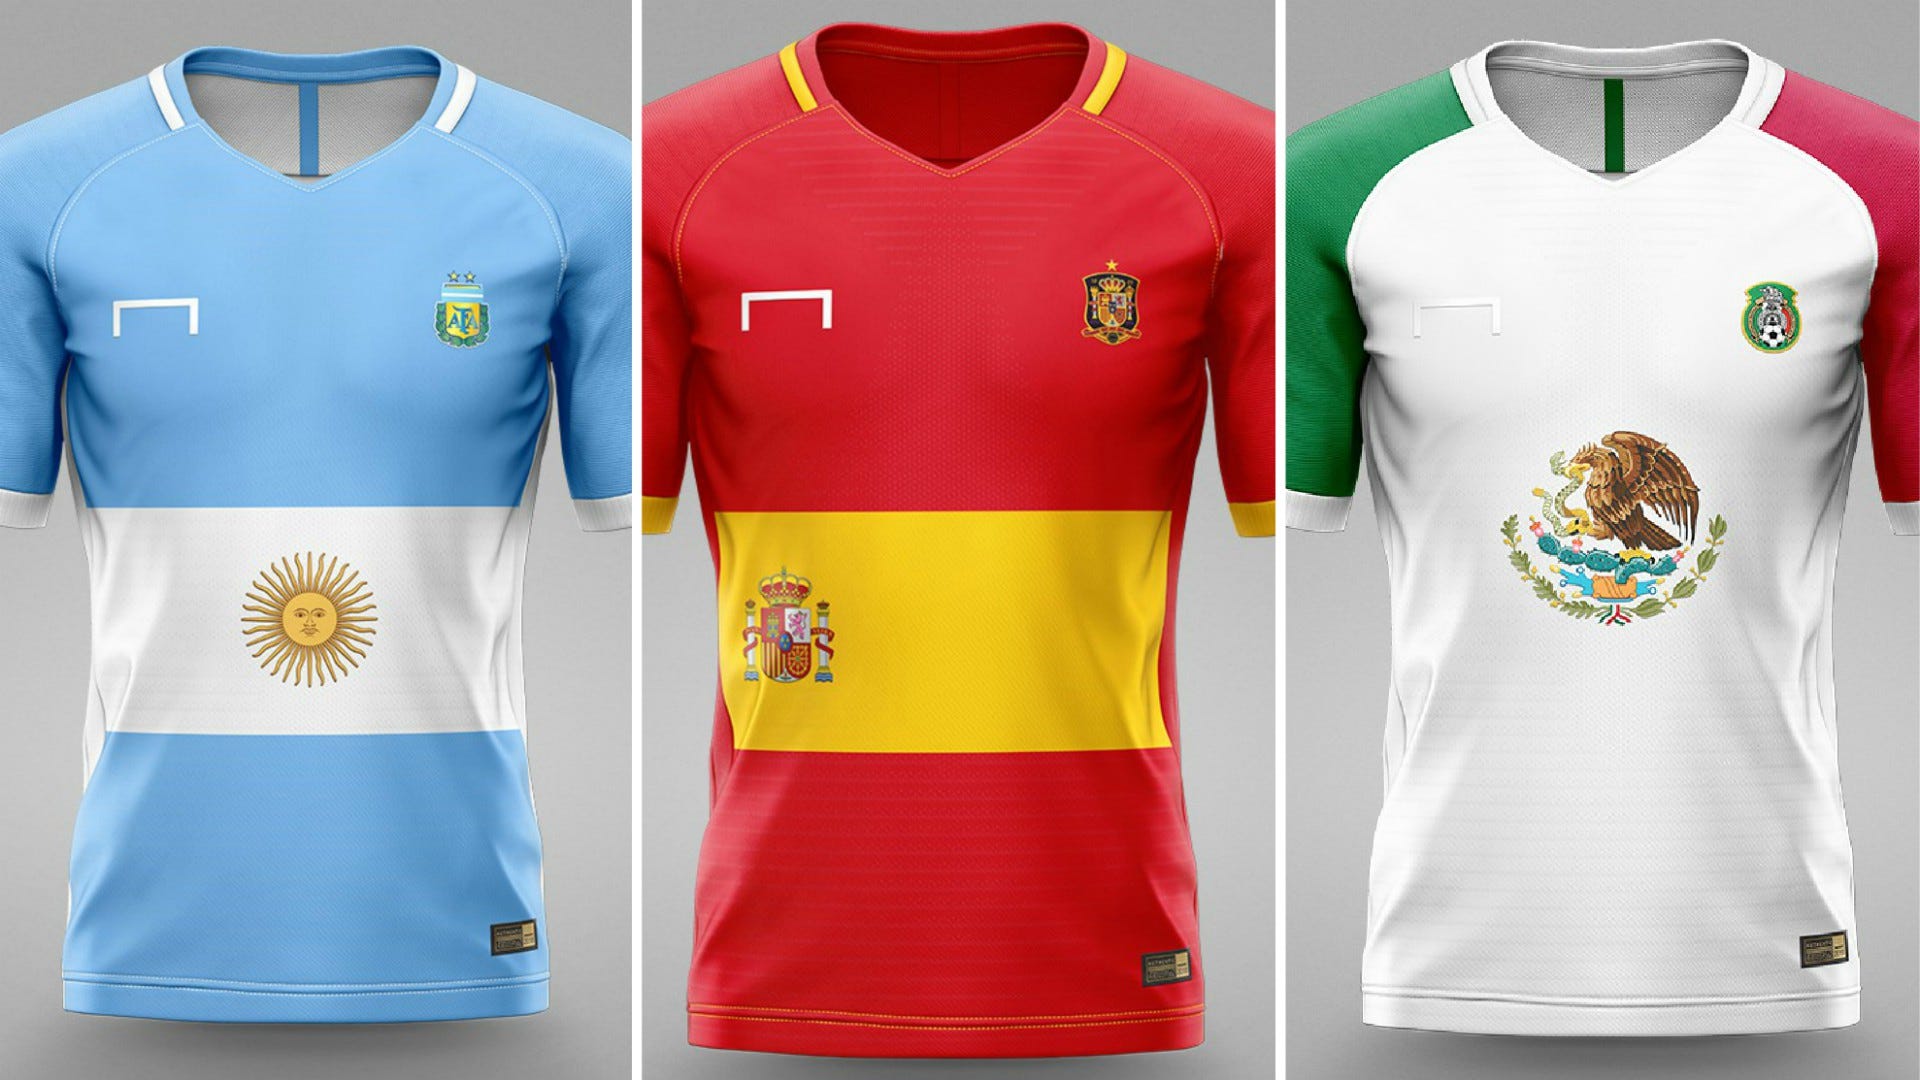 Cómo serían los uniformes de selecciones basados en sus banderas? | Espana